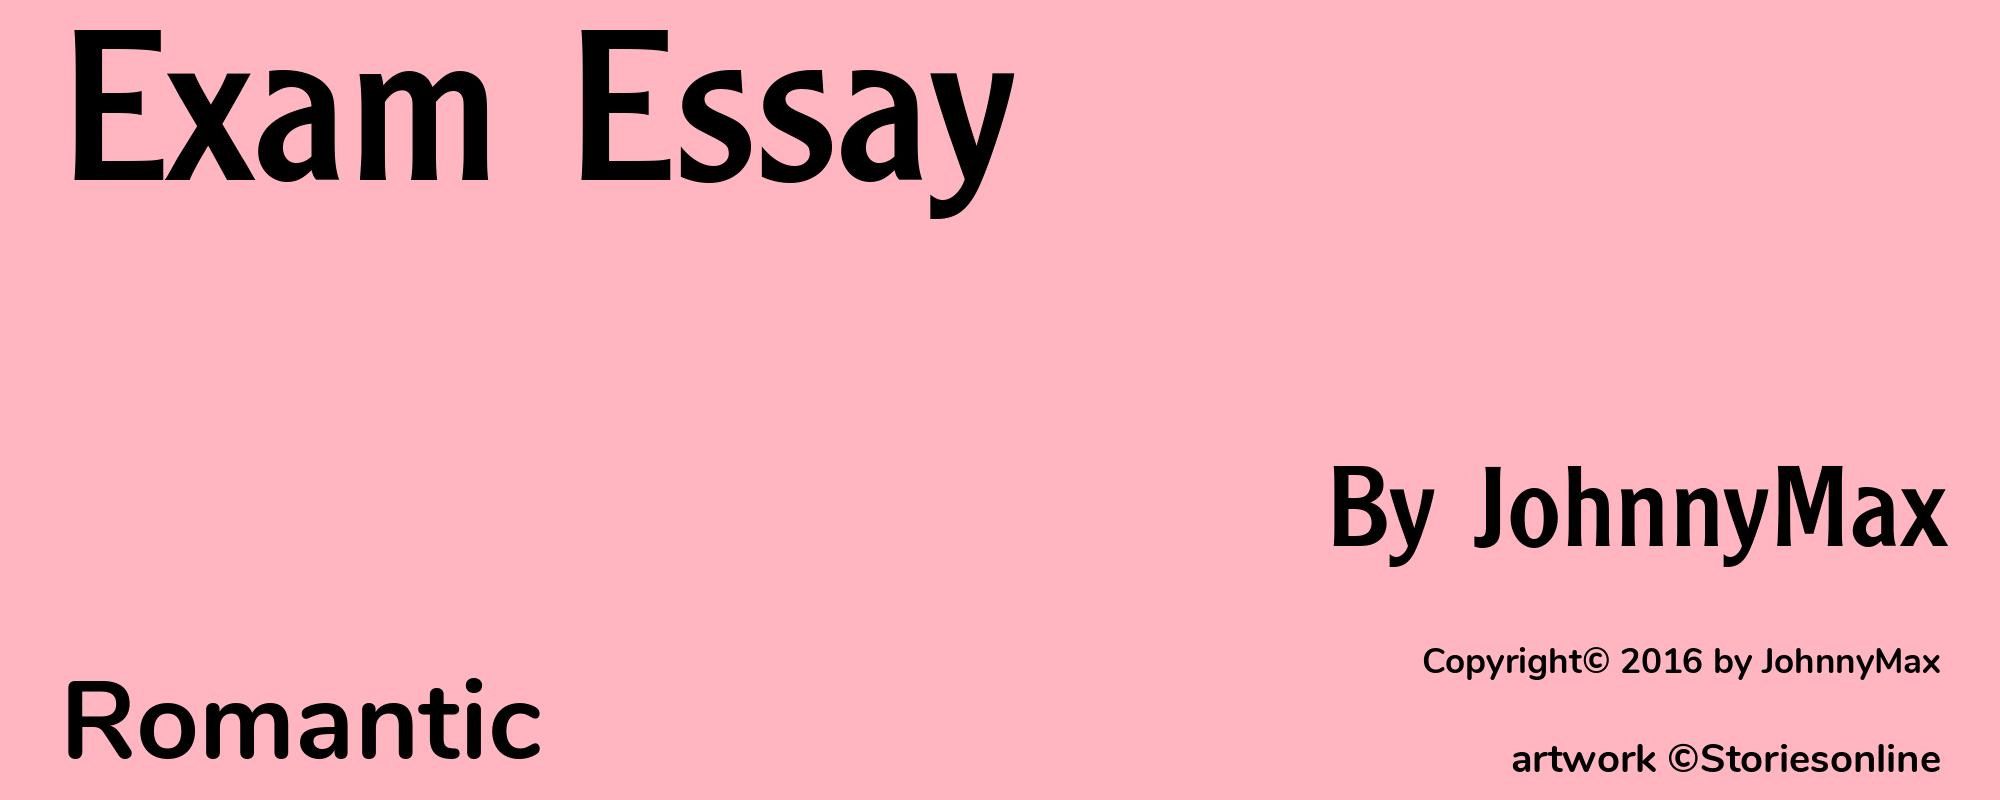 Exam Essay - Cover